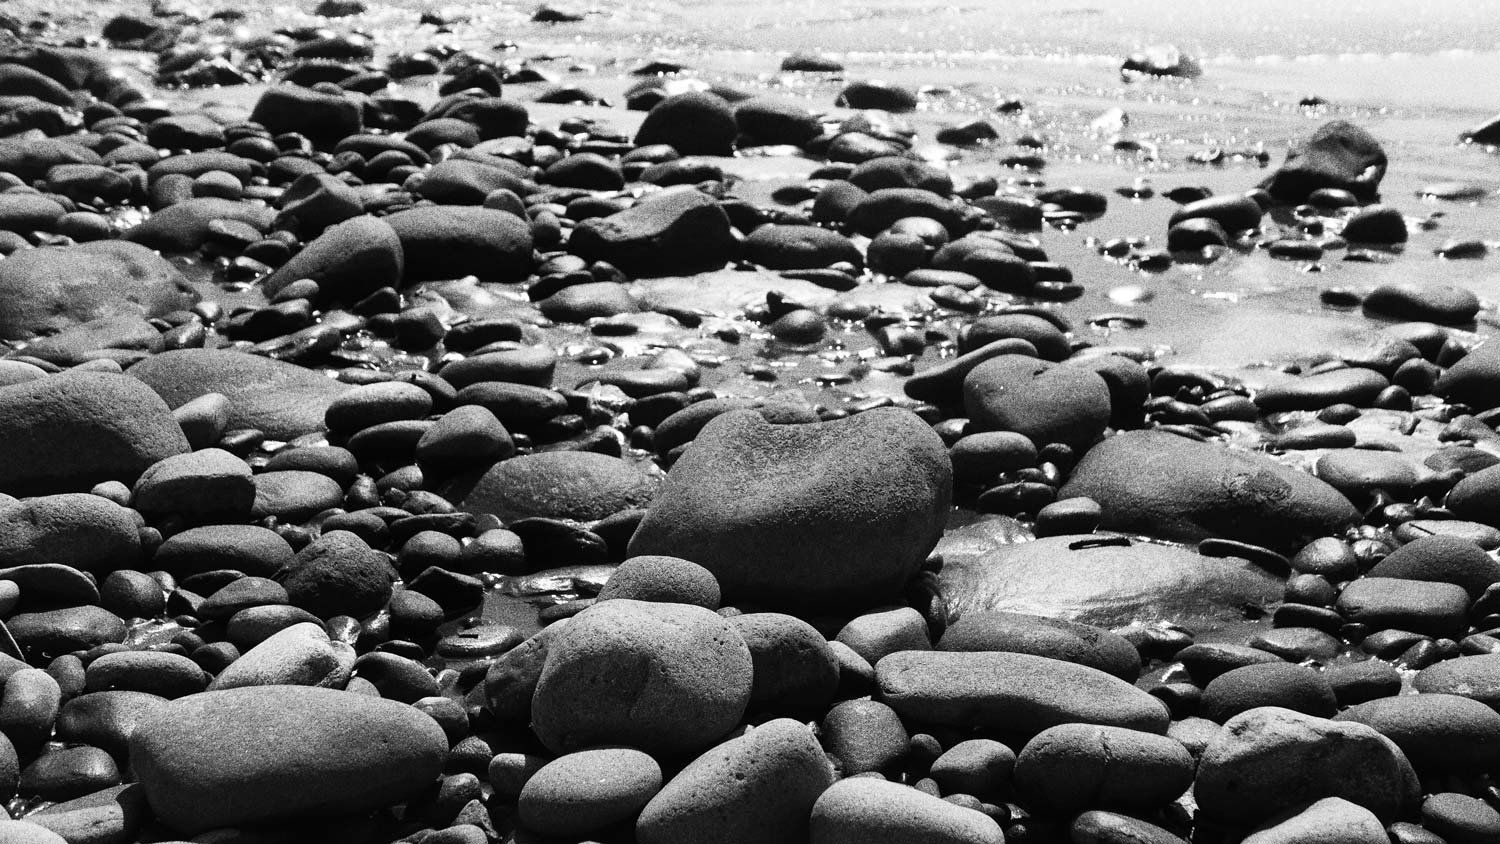 Stones at El Tunco beach, El Salvador